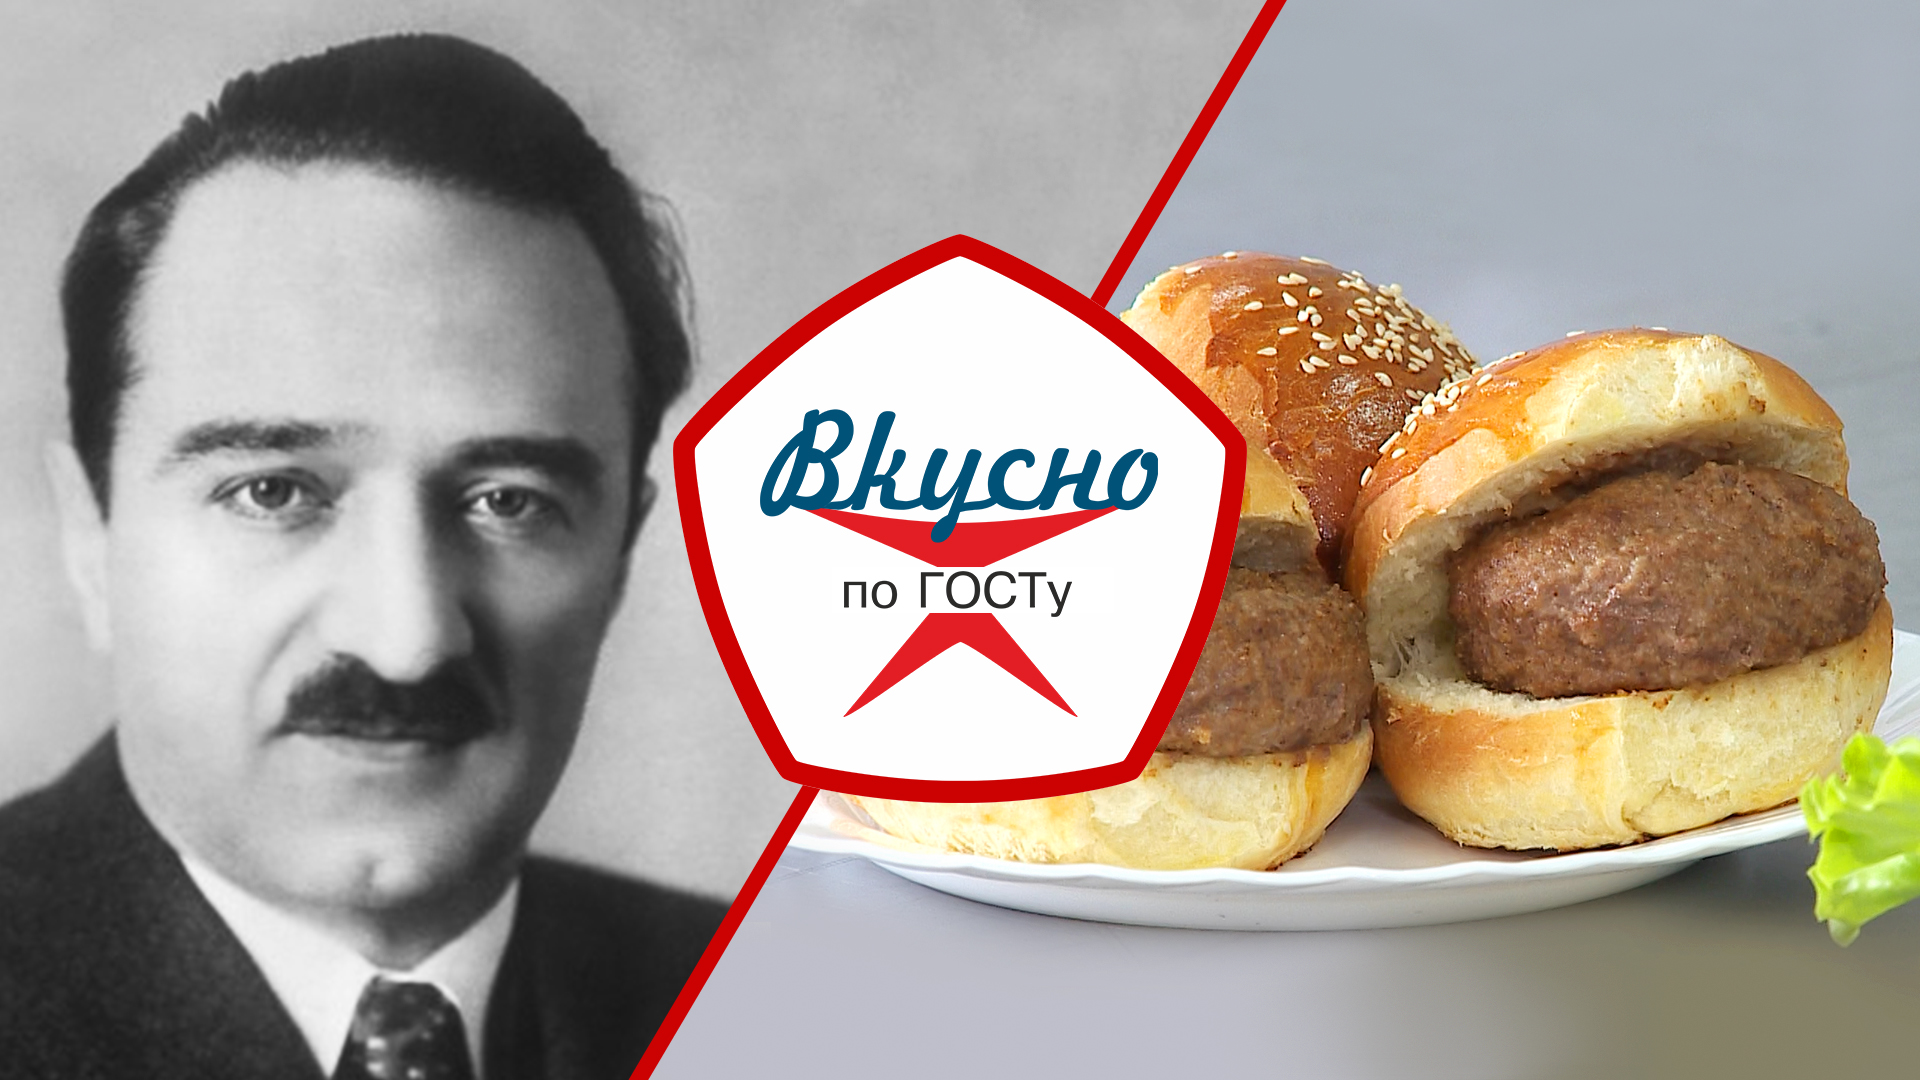 Отец советского пищепрома. Как Анастас Микоян повлиял на кухню СССР | Вкусно по ГОСТу